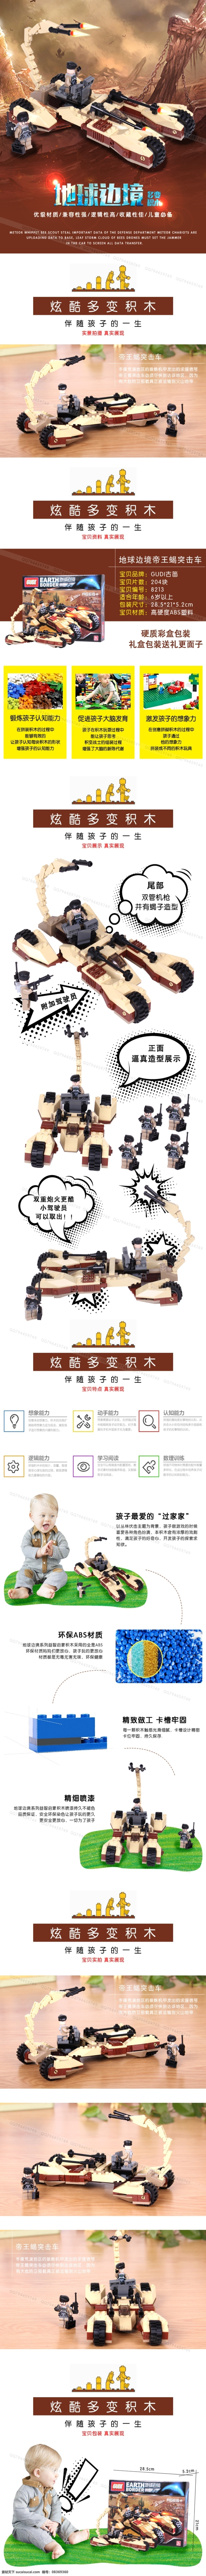 澄海 玩具 积木 系列 兼职 淘宝模板下载 淘宝设计 淘宝素材 原创设计 原创淘宝设计